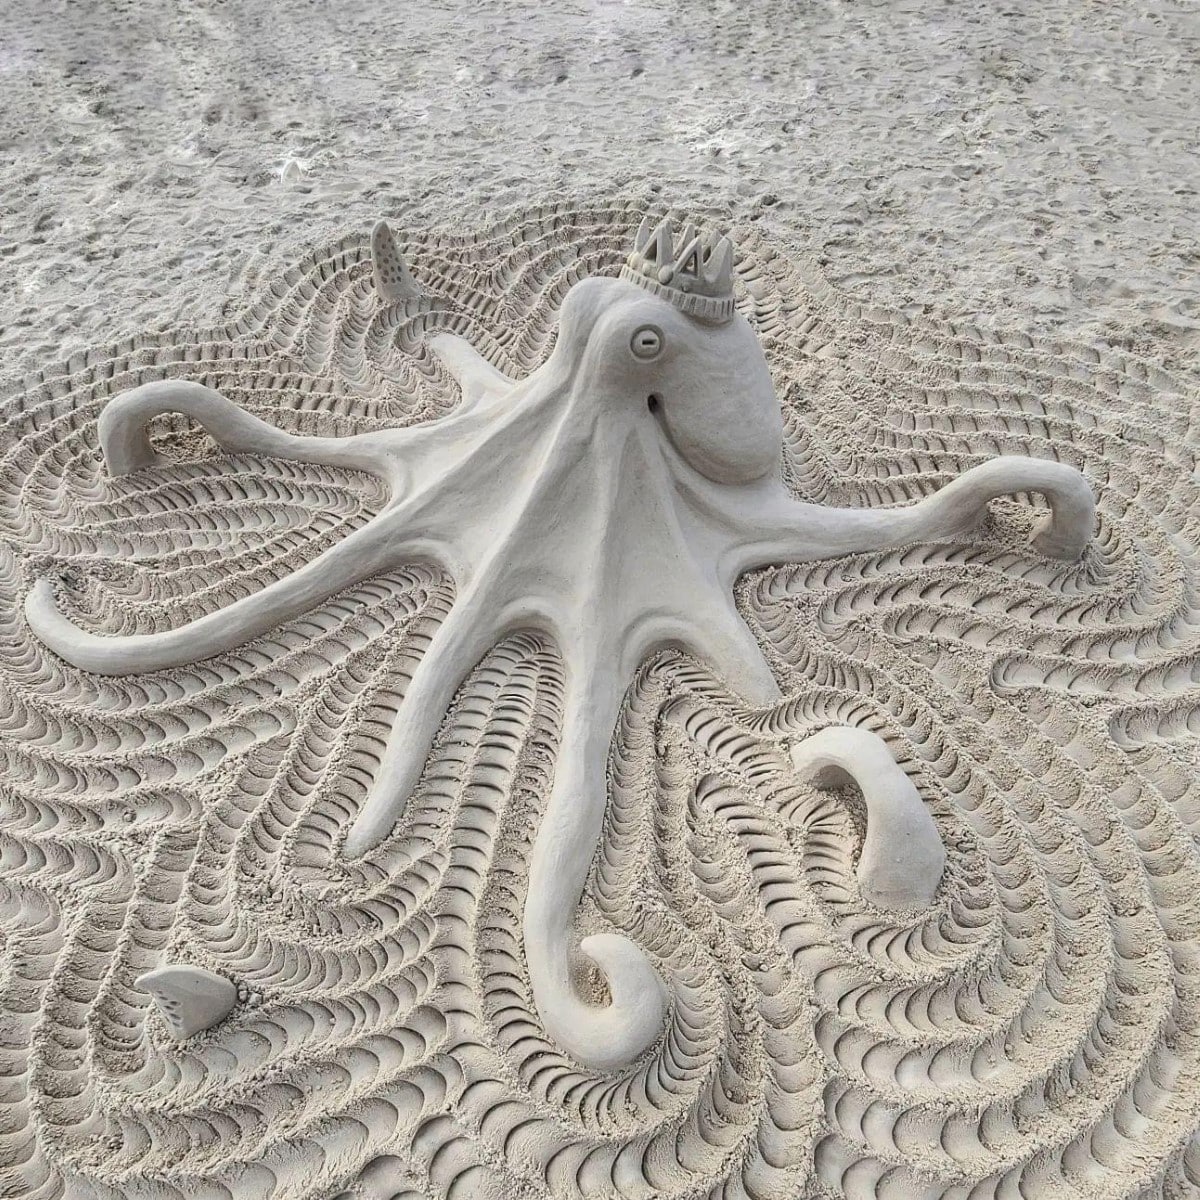 Octopus sand sculpture